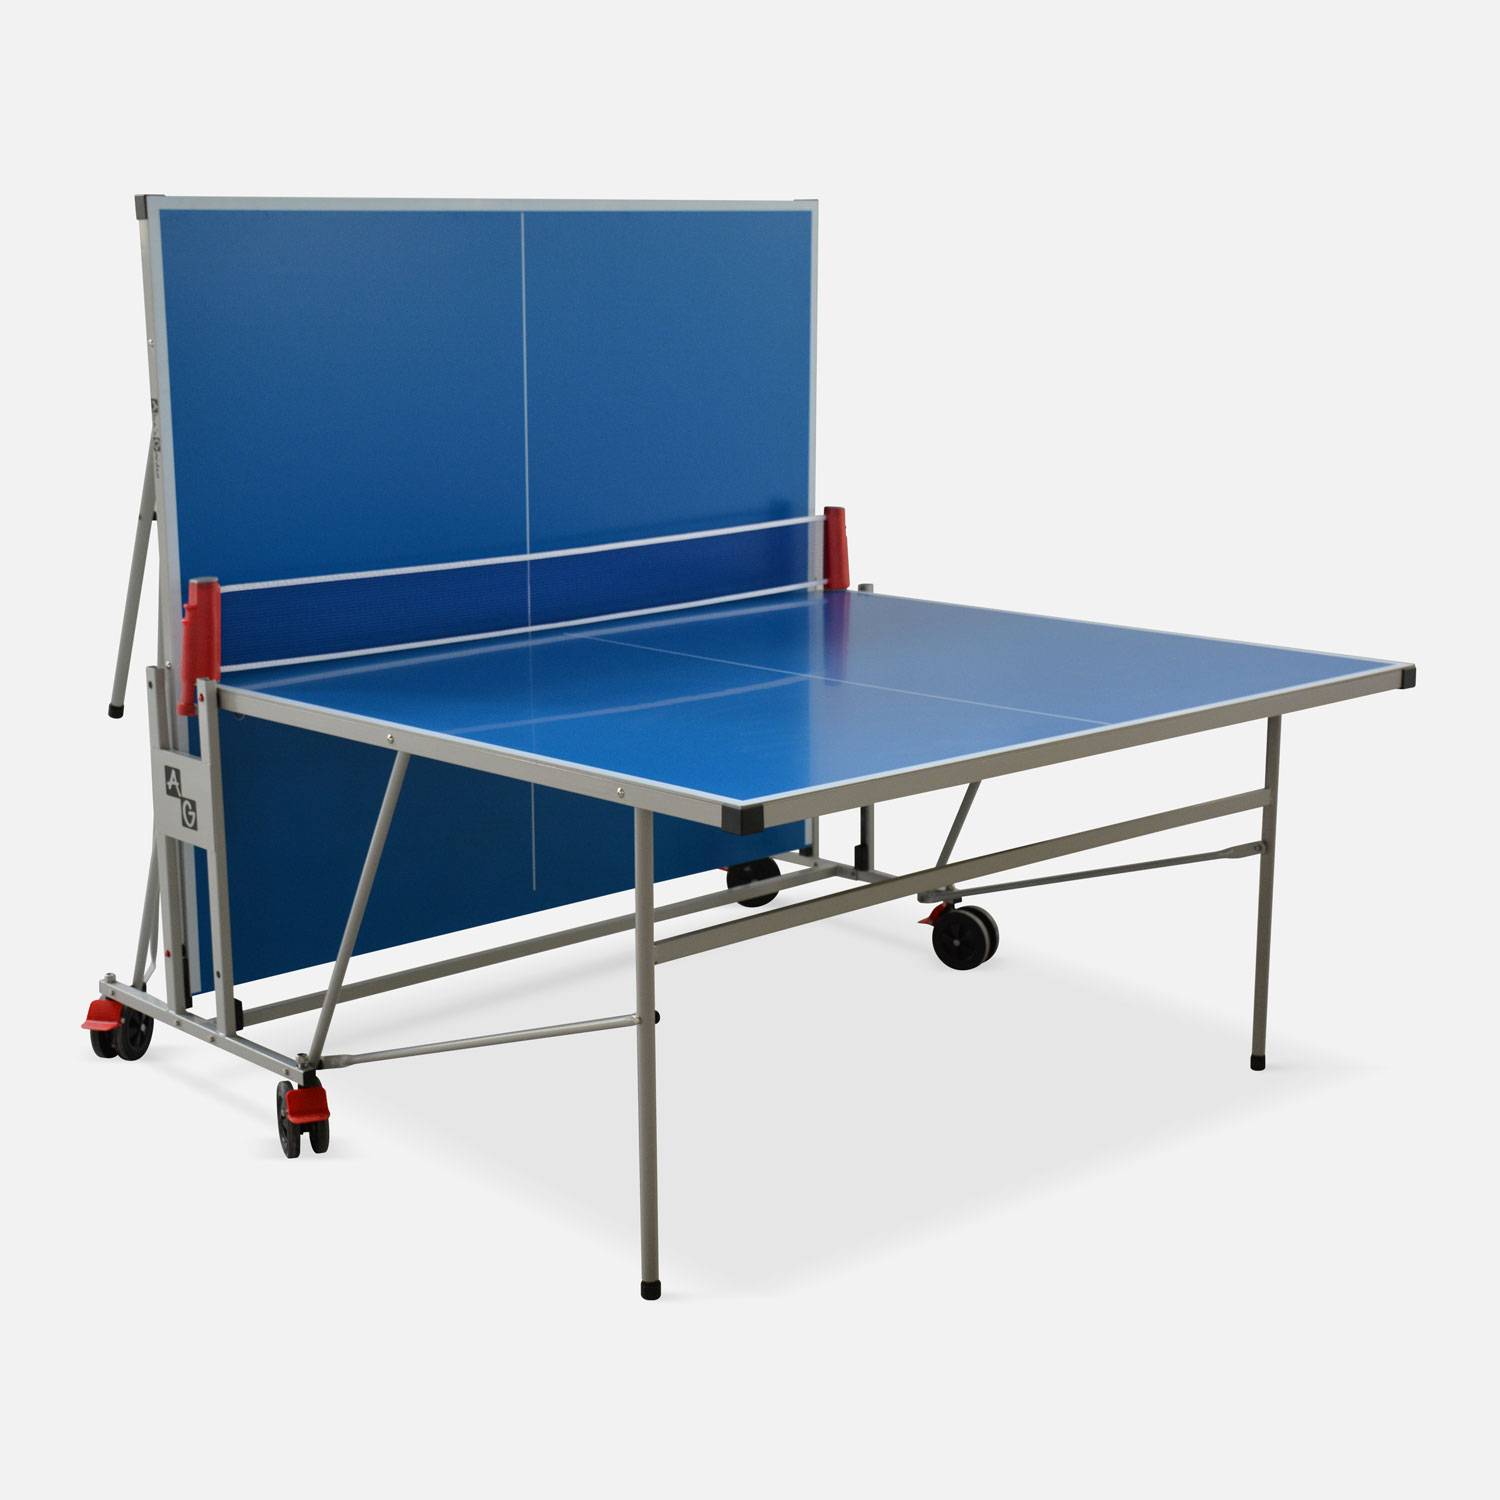 Table de ping pong OUTDOOR bleue avec housse de protection, table pliable avec 2 raquettes et 3 balles, pour utilisation extérieure, sport tennis de table Photo6